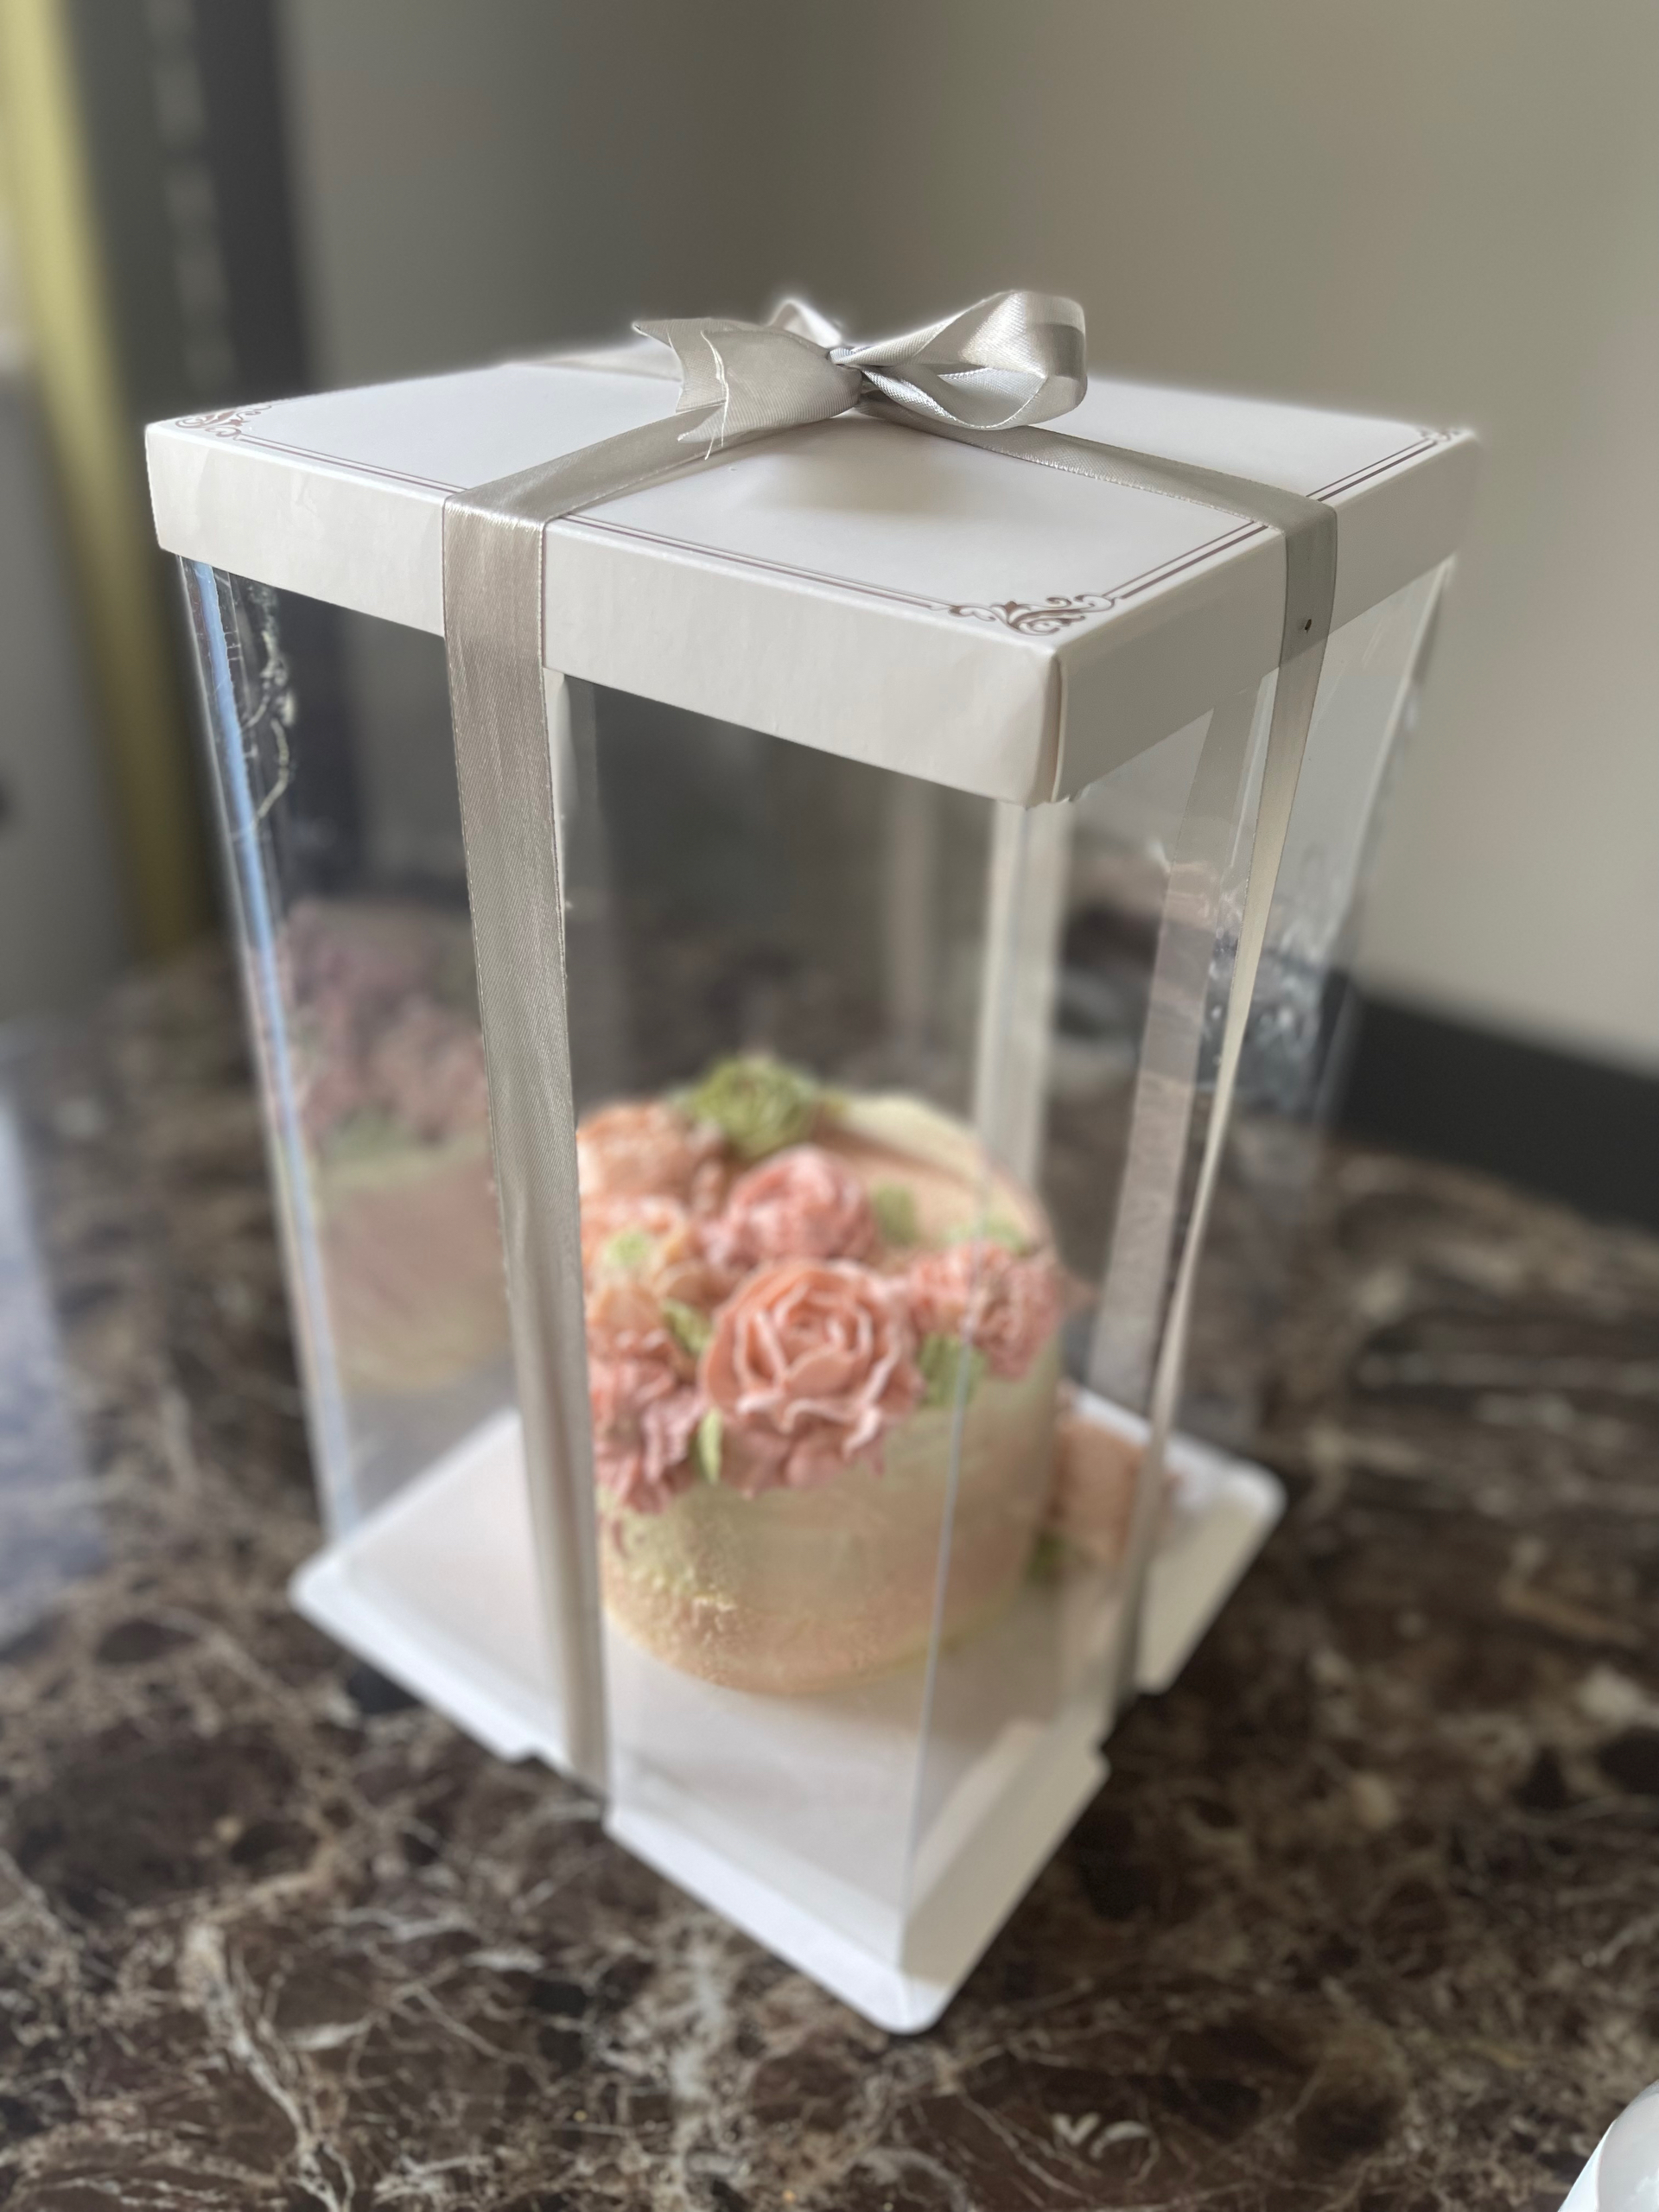 韩式豆沙裱花蛋糕 玫瑰蛋糕